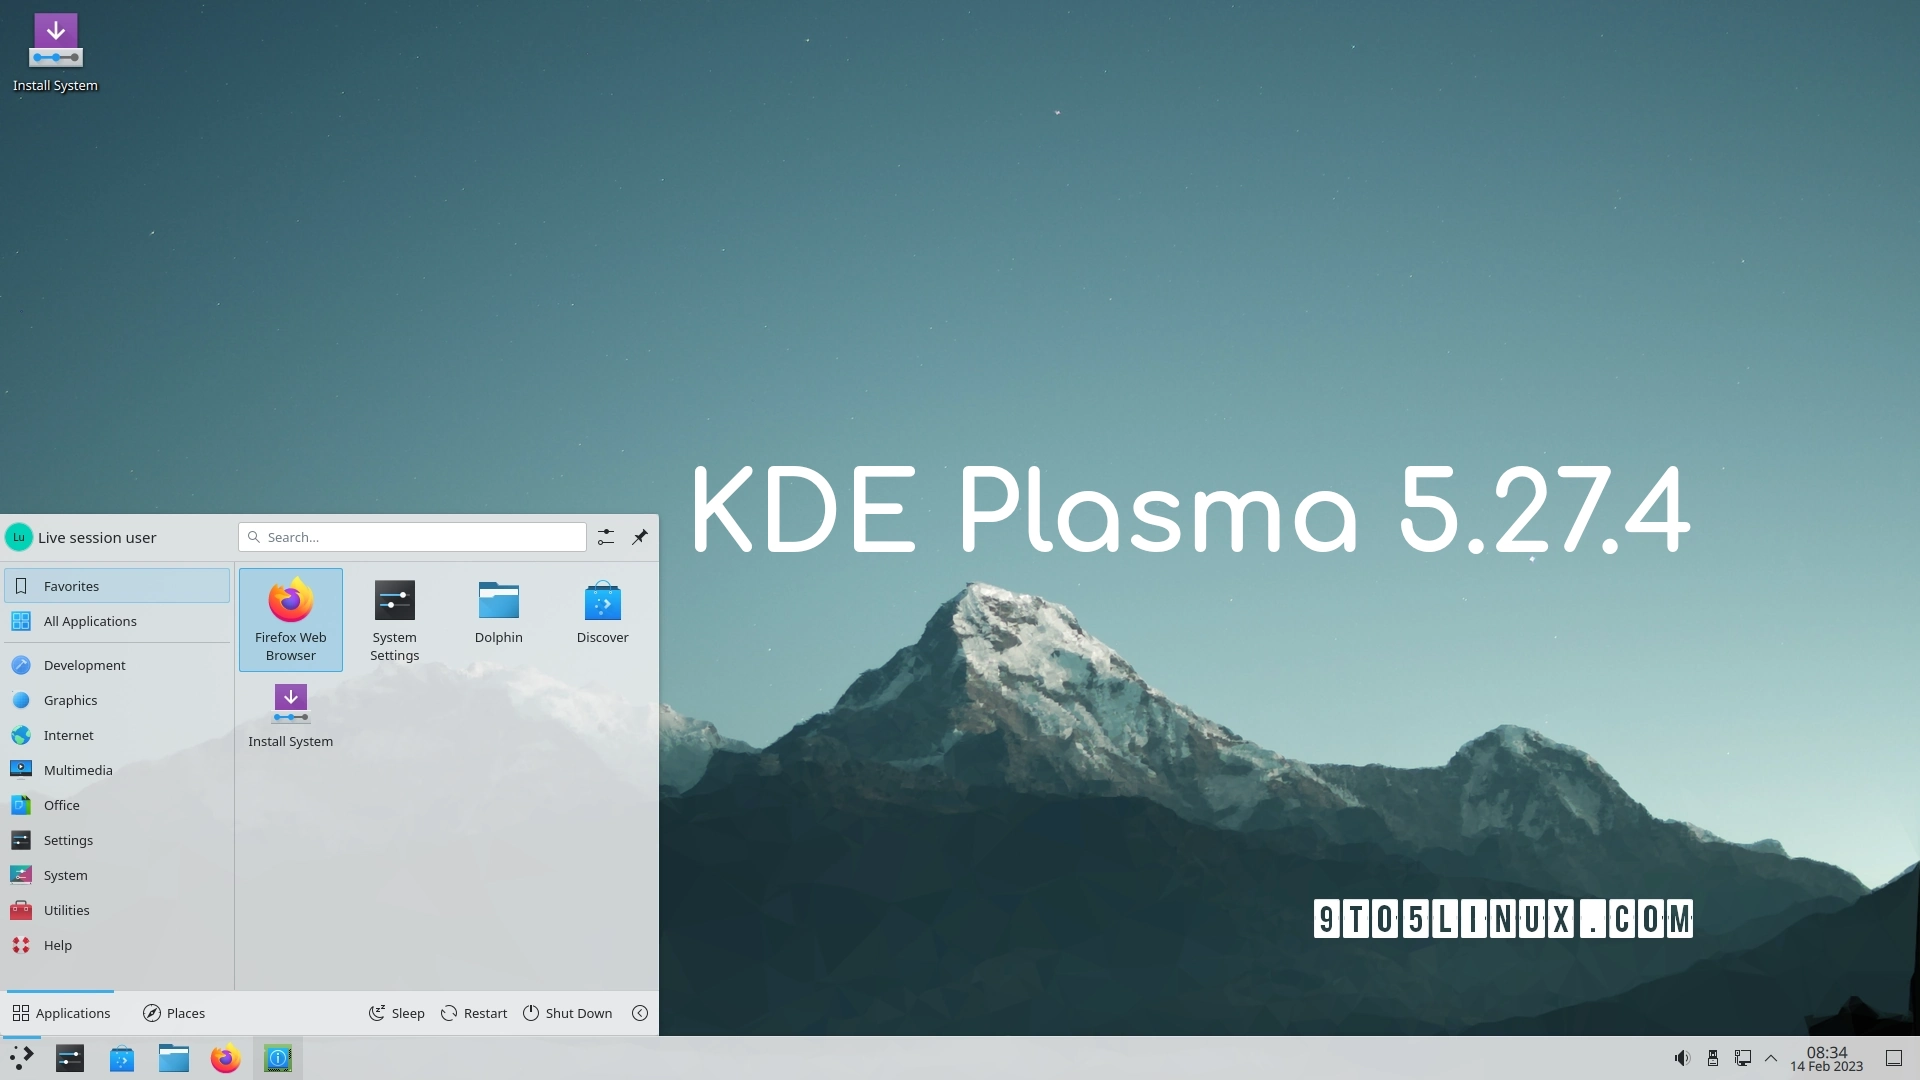 KDE Plasma 5.27.4 Improves Plasma Wayland on NVIDIA GPUs, Fixes Many Bugs